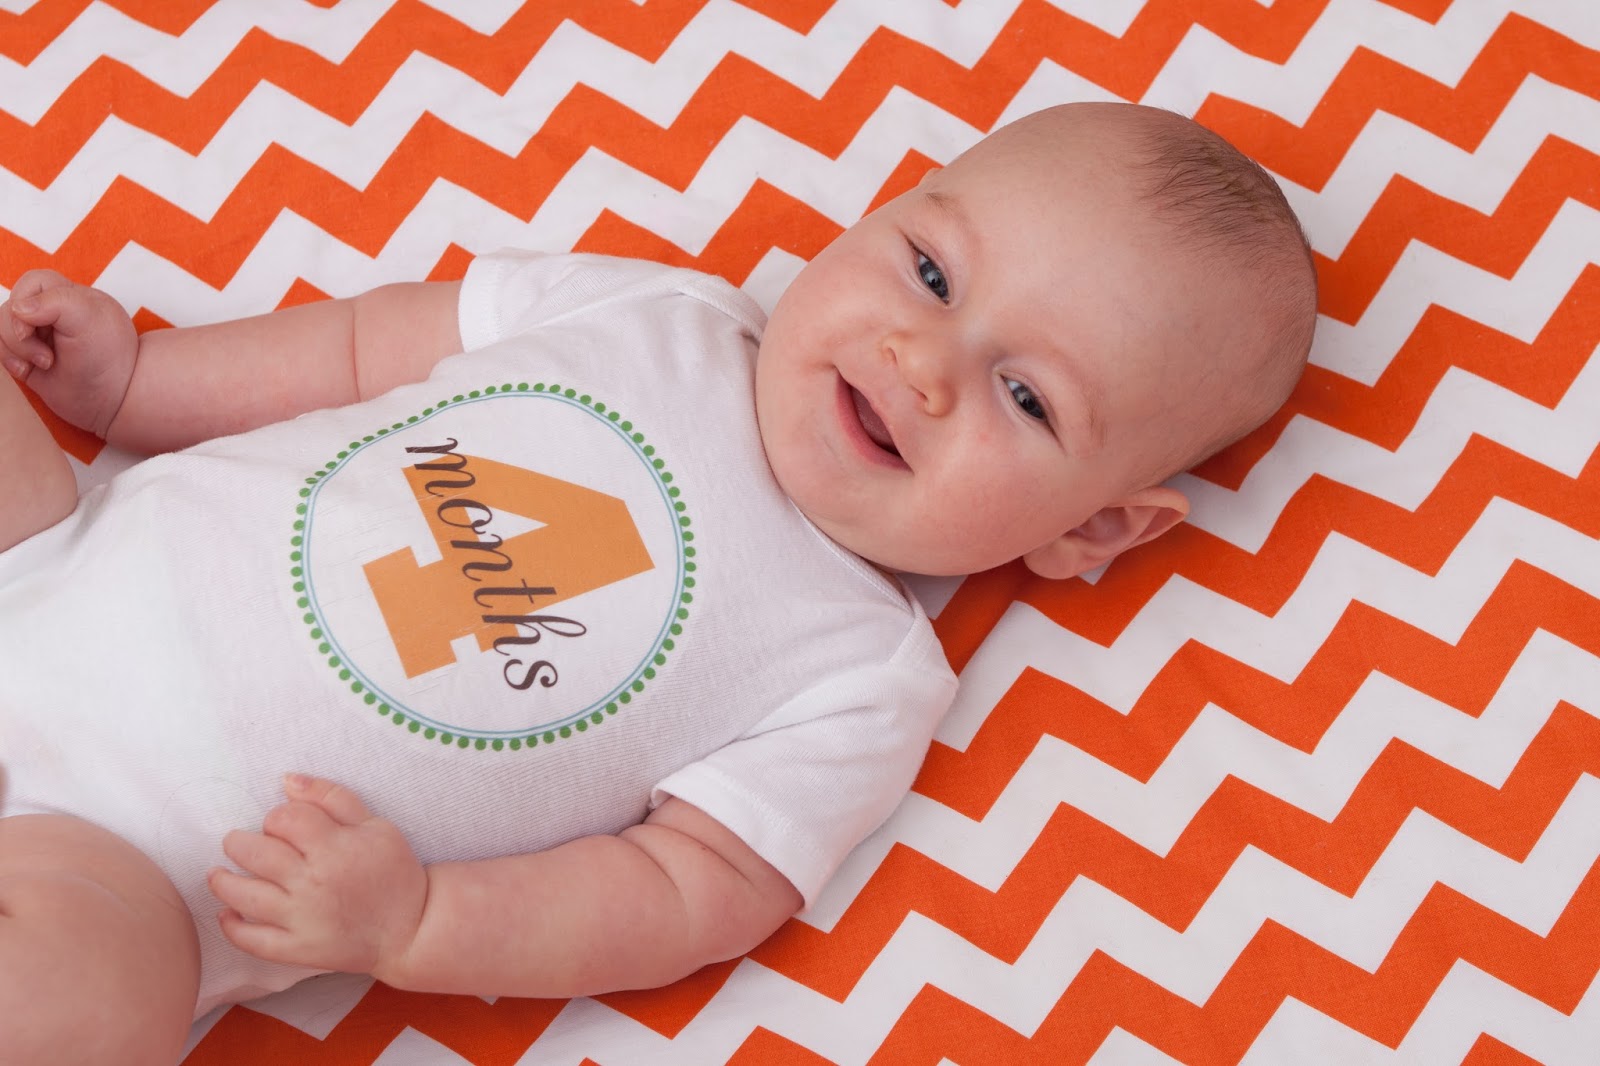 Quarto mese del neonato: tutto quello che devi sapere